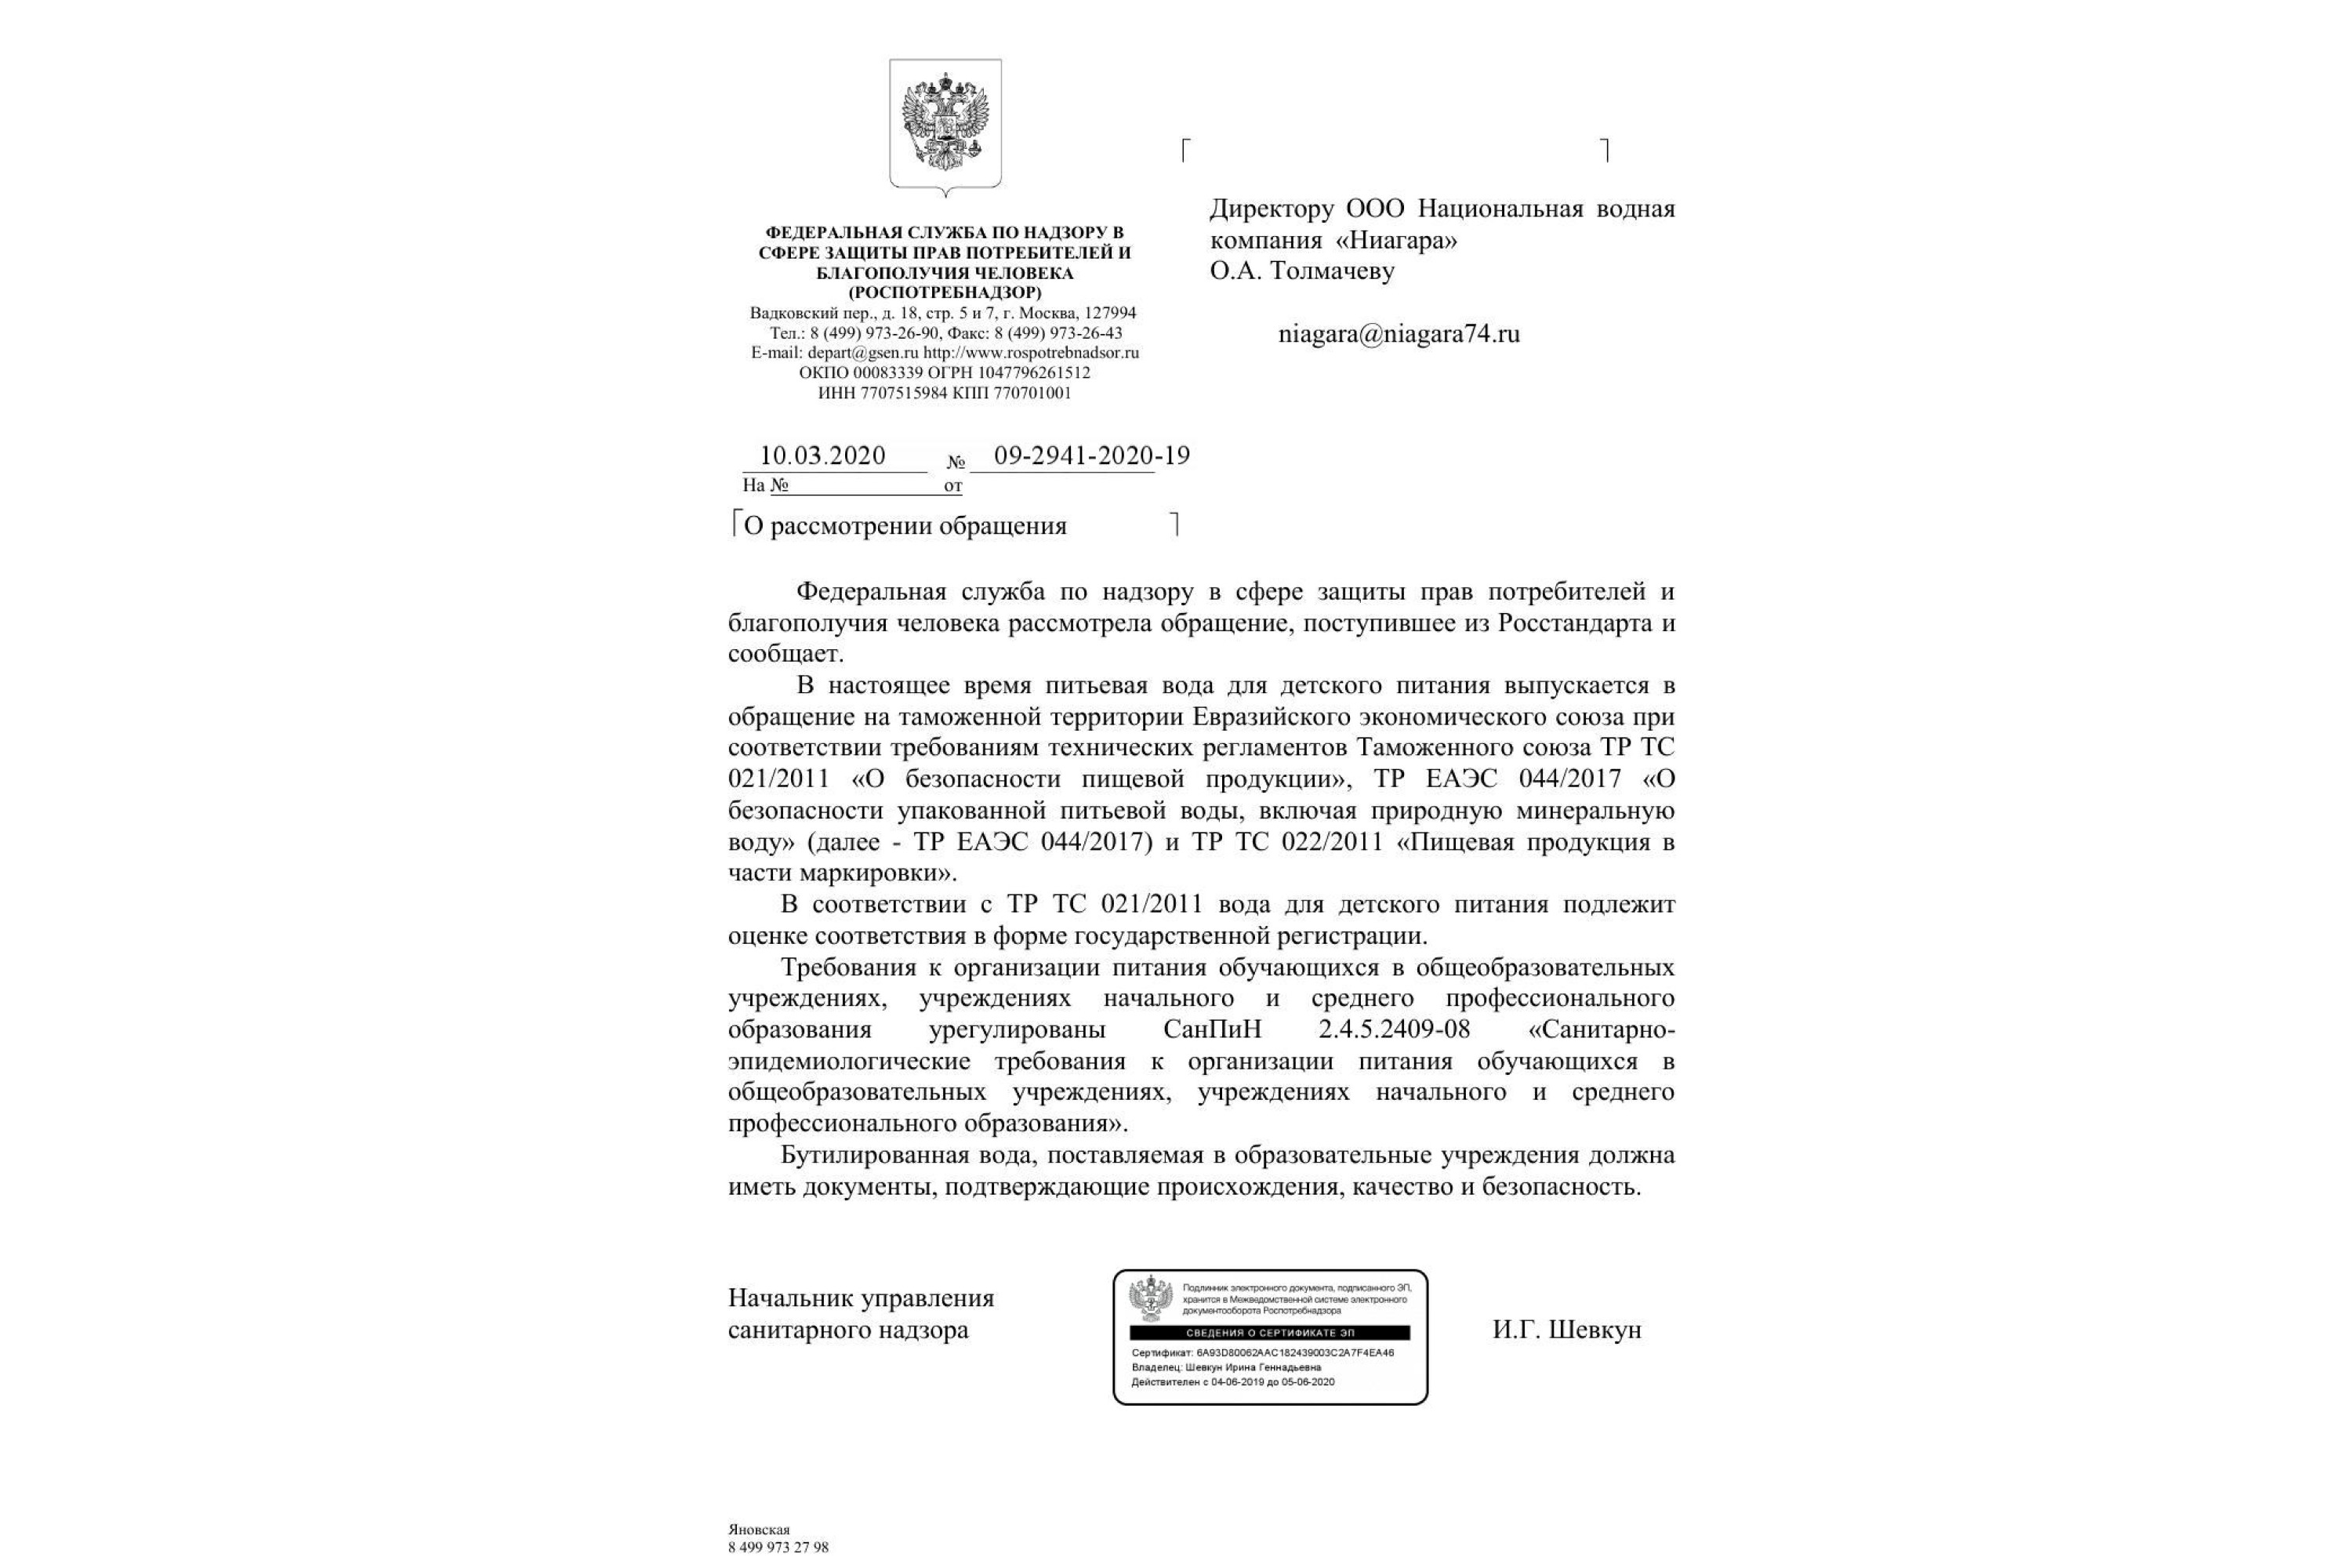 Компания обращалась за разъяснениями по «водному» вопросу в Роспотребнадзор 